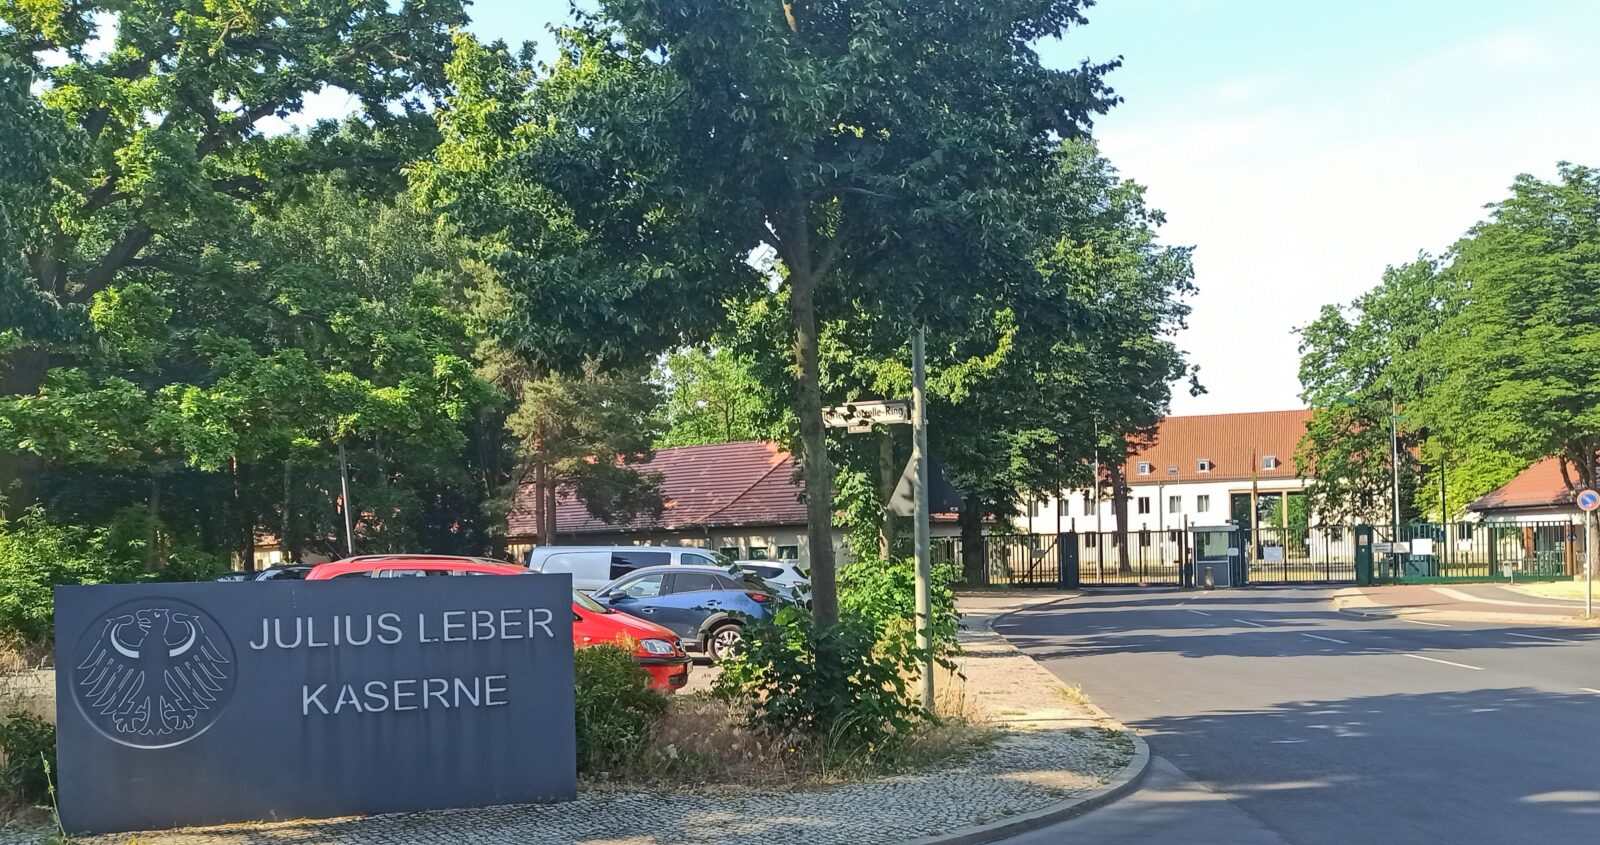 Julius-Leber-Kaserne